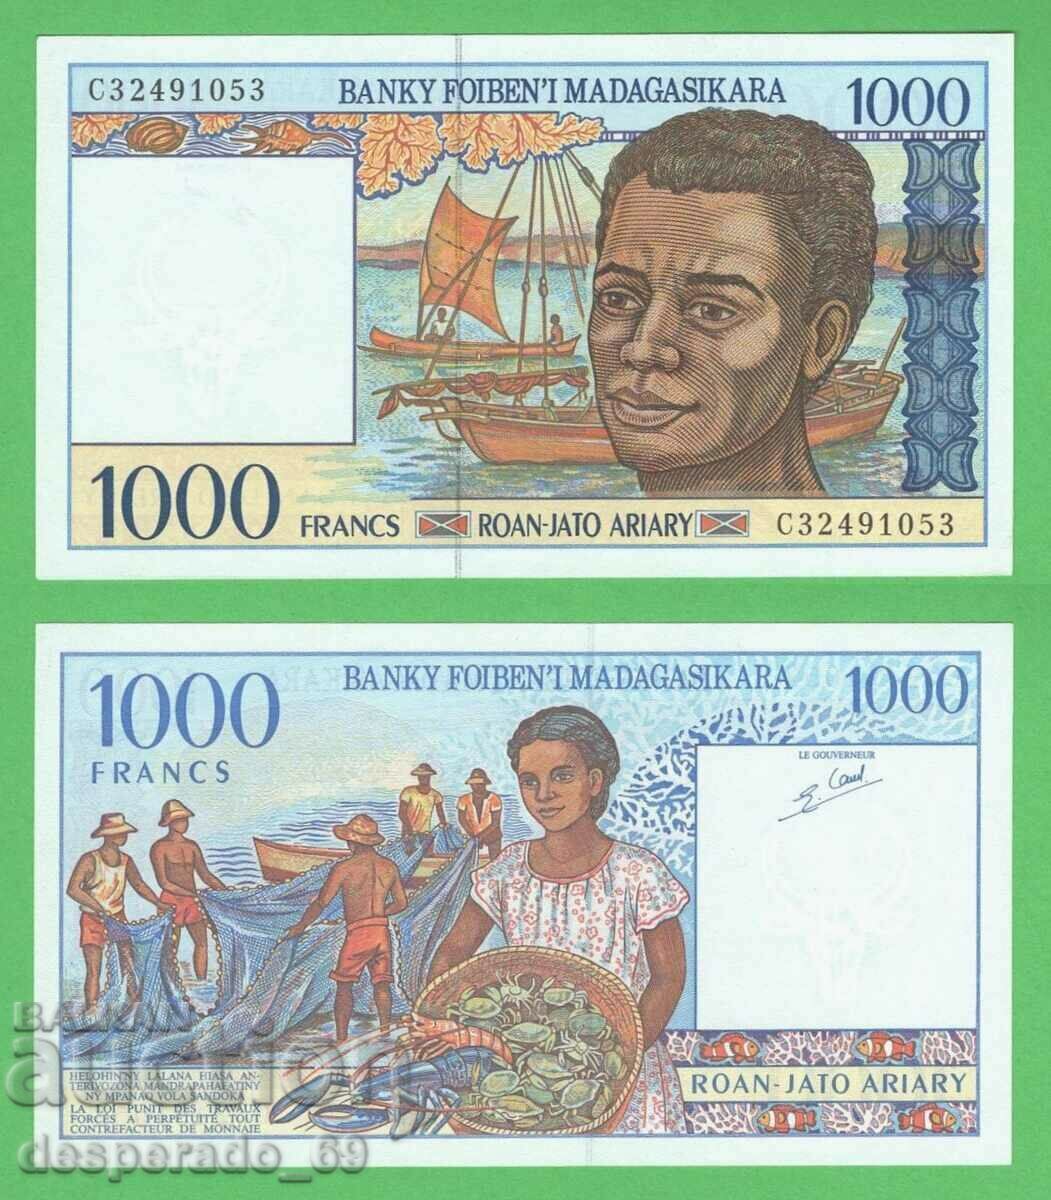 (¯`'•.¸ MADAGASCAR 1000 franci 1994 UNC ¸.•'´¯)